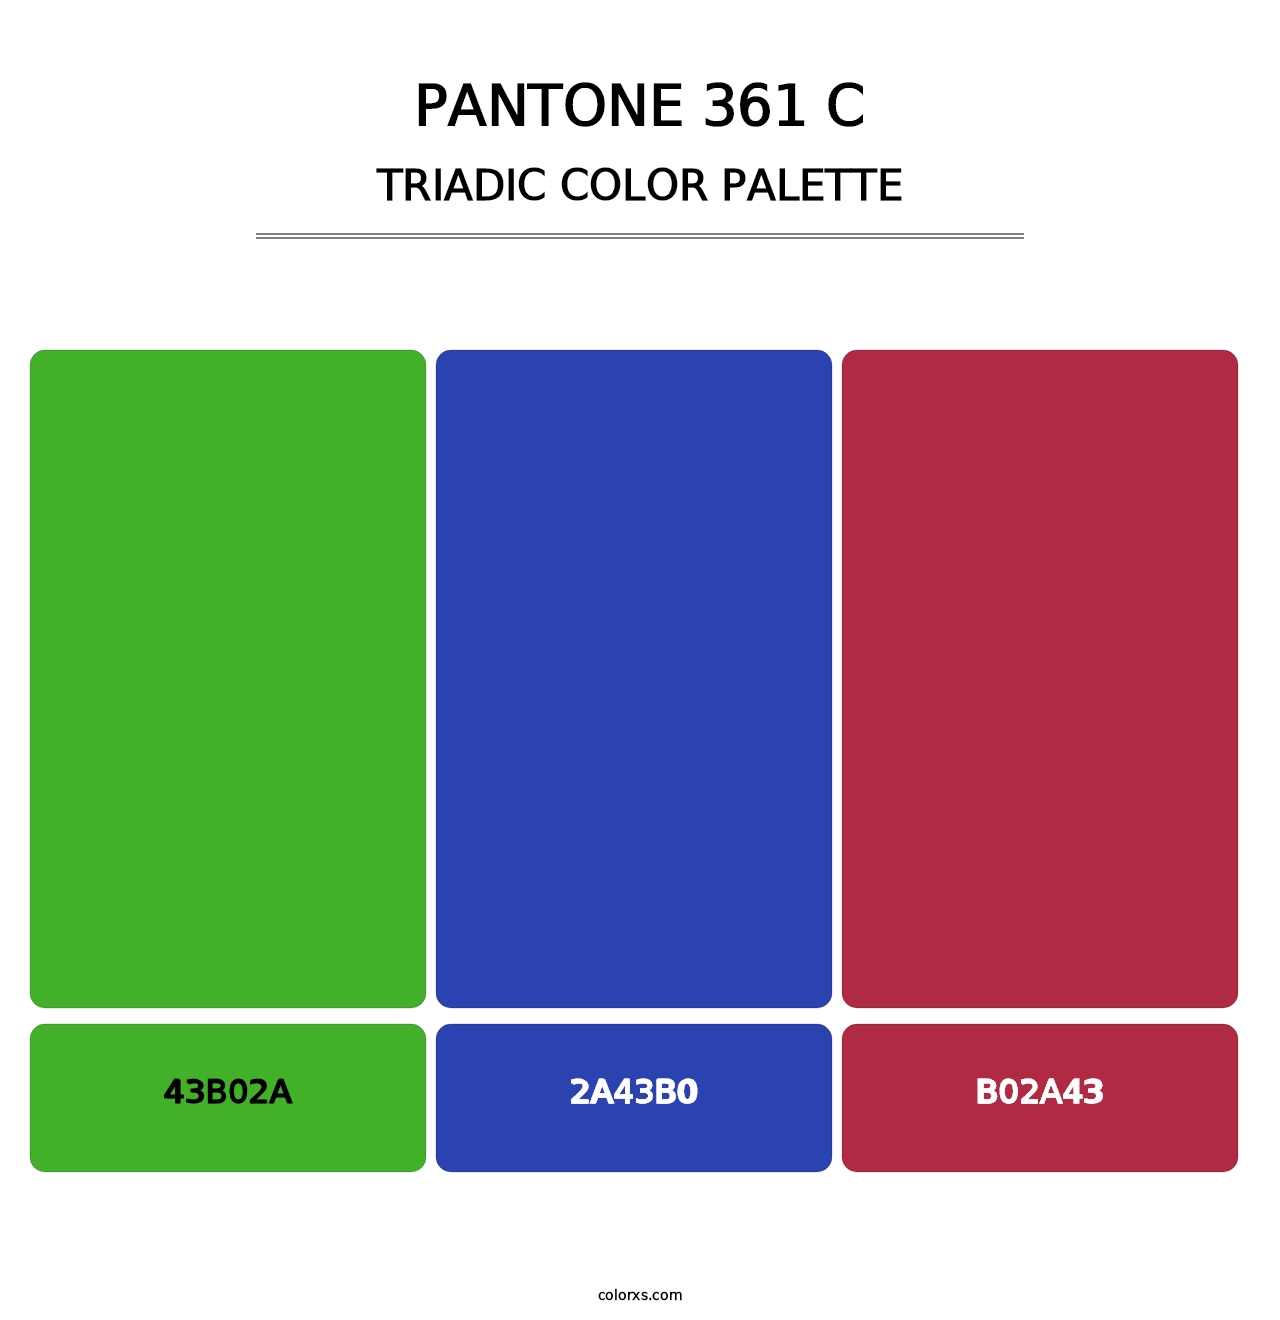 PANTONE 361 C - Triadic Color Palette